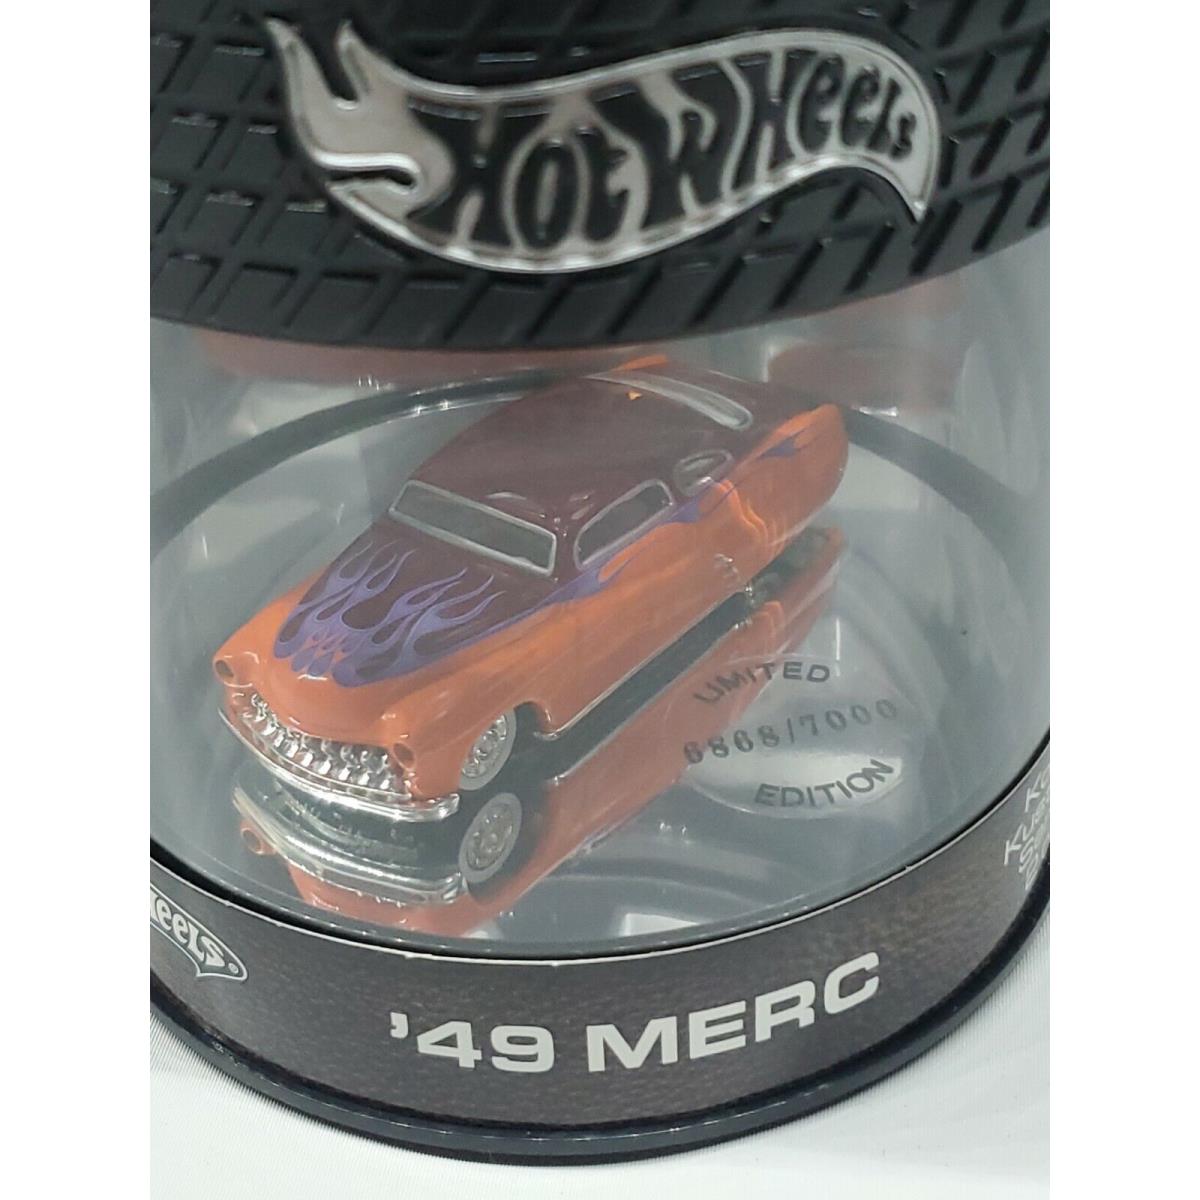 Hot Wheels Kool Kustom Orange 49 Merc 2004 Rlc 4305/7000 Can